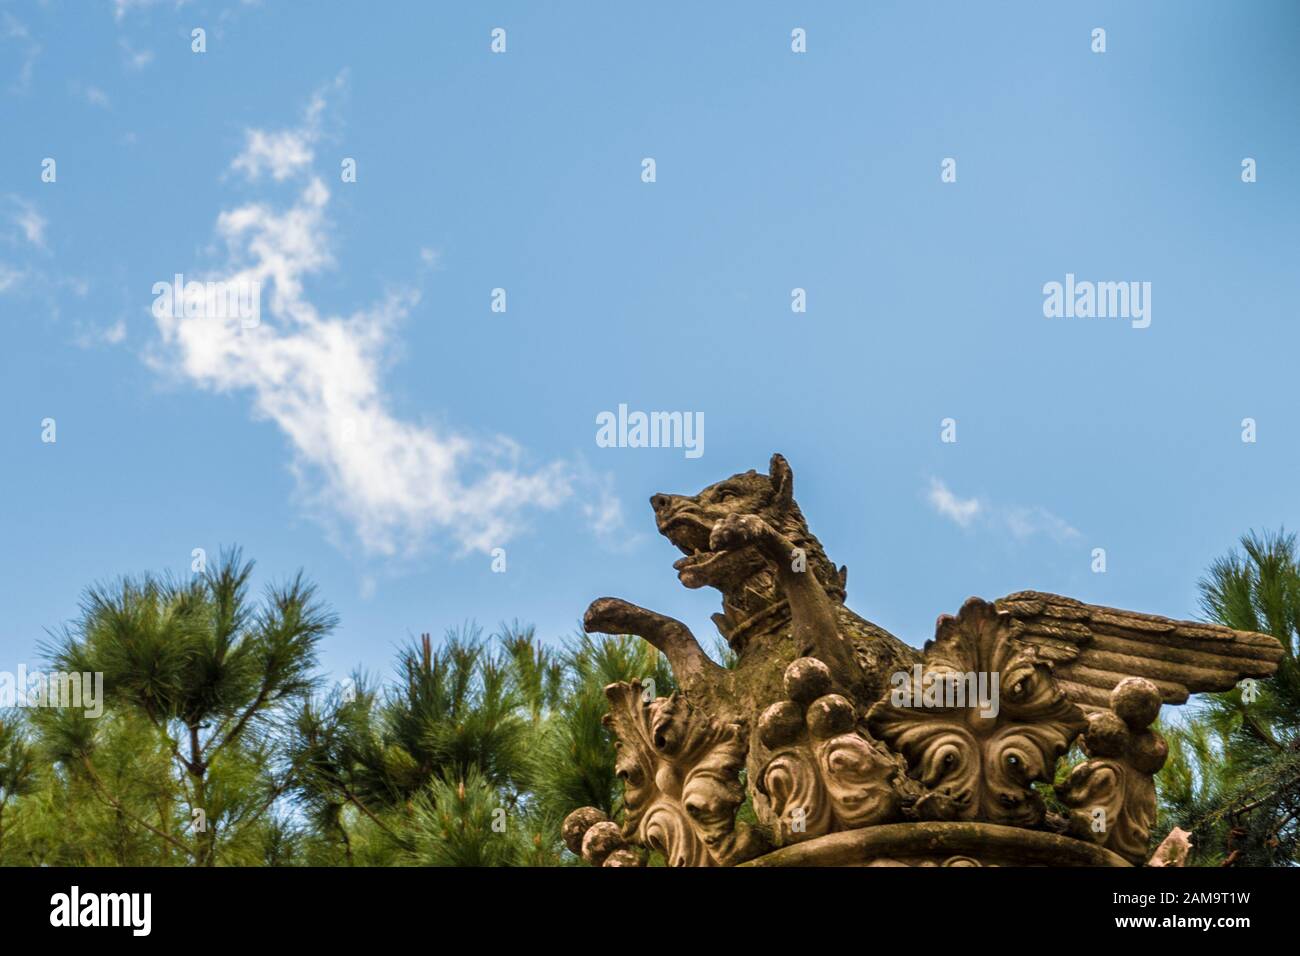 Sculptures hurlant au ciel Banque D'Images